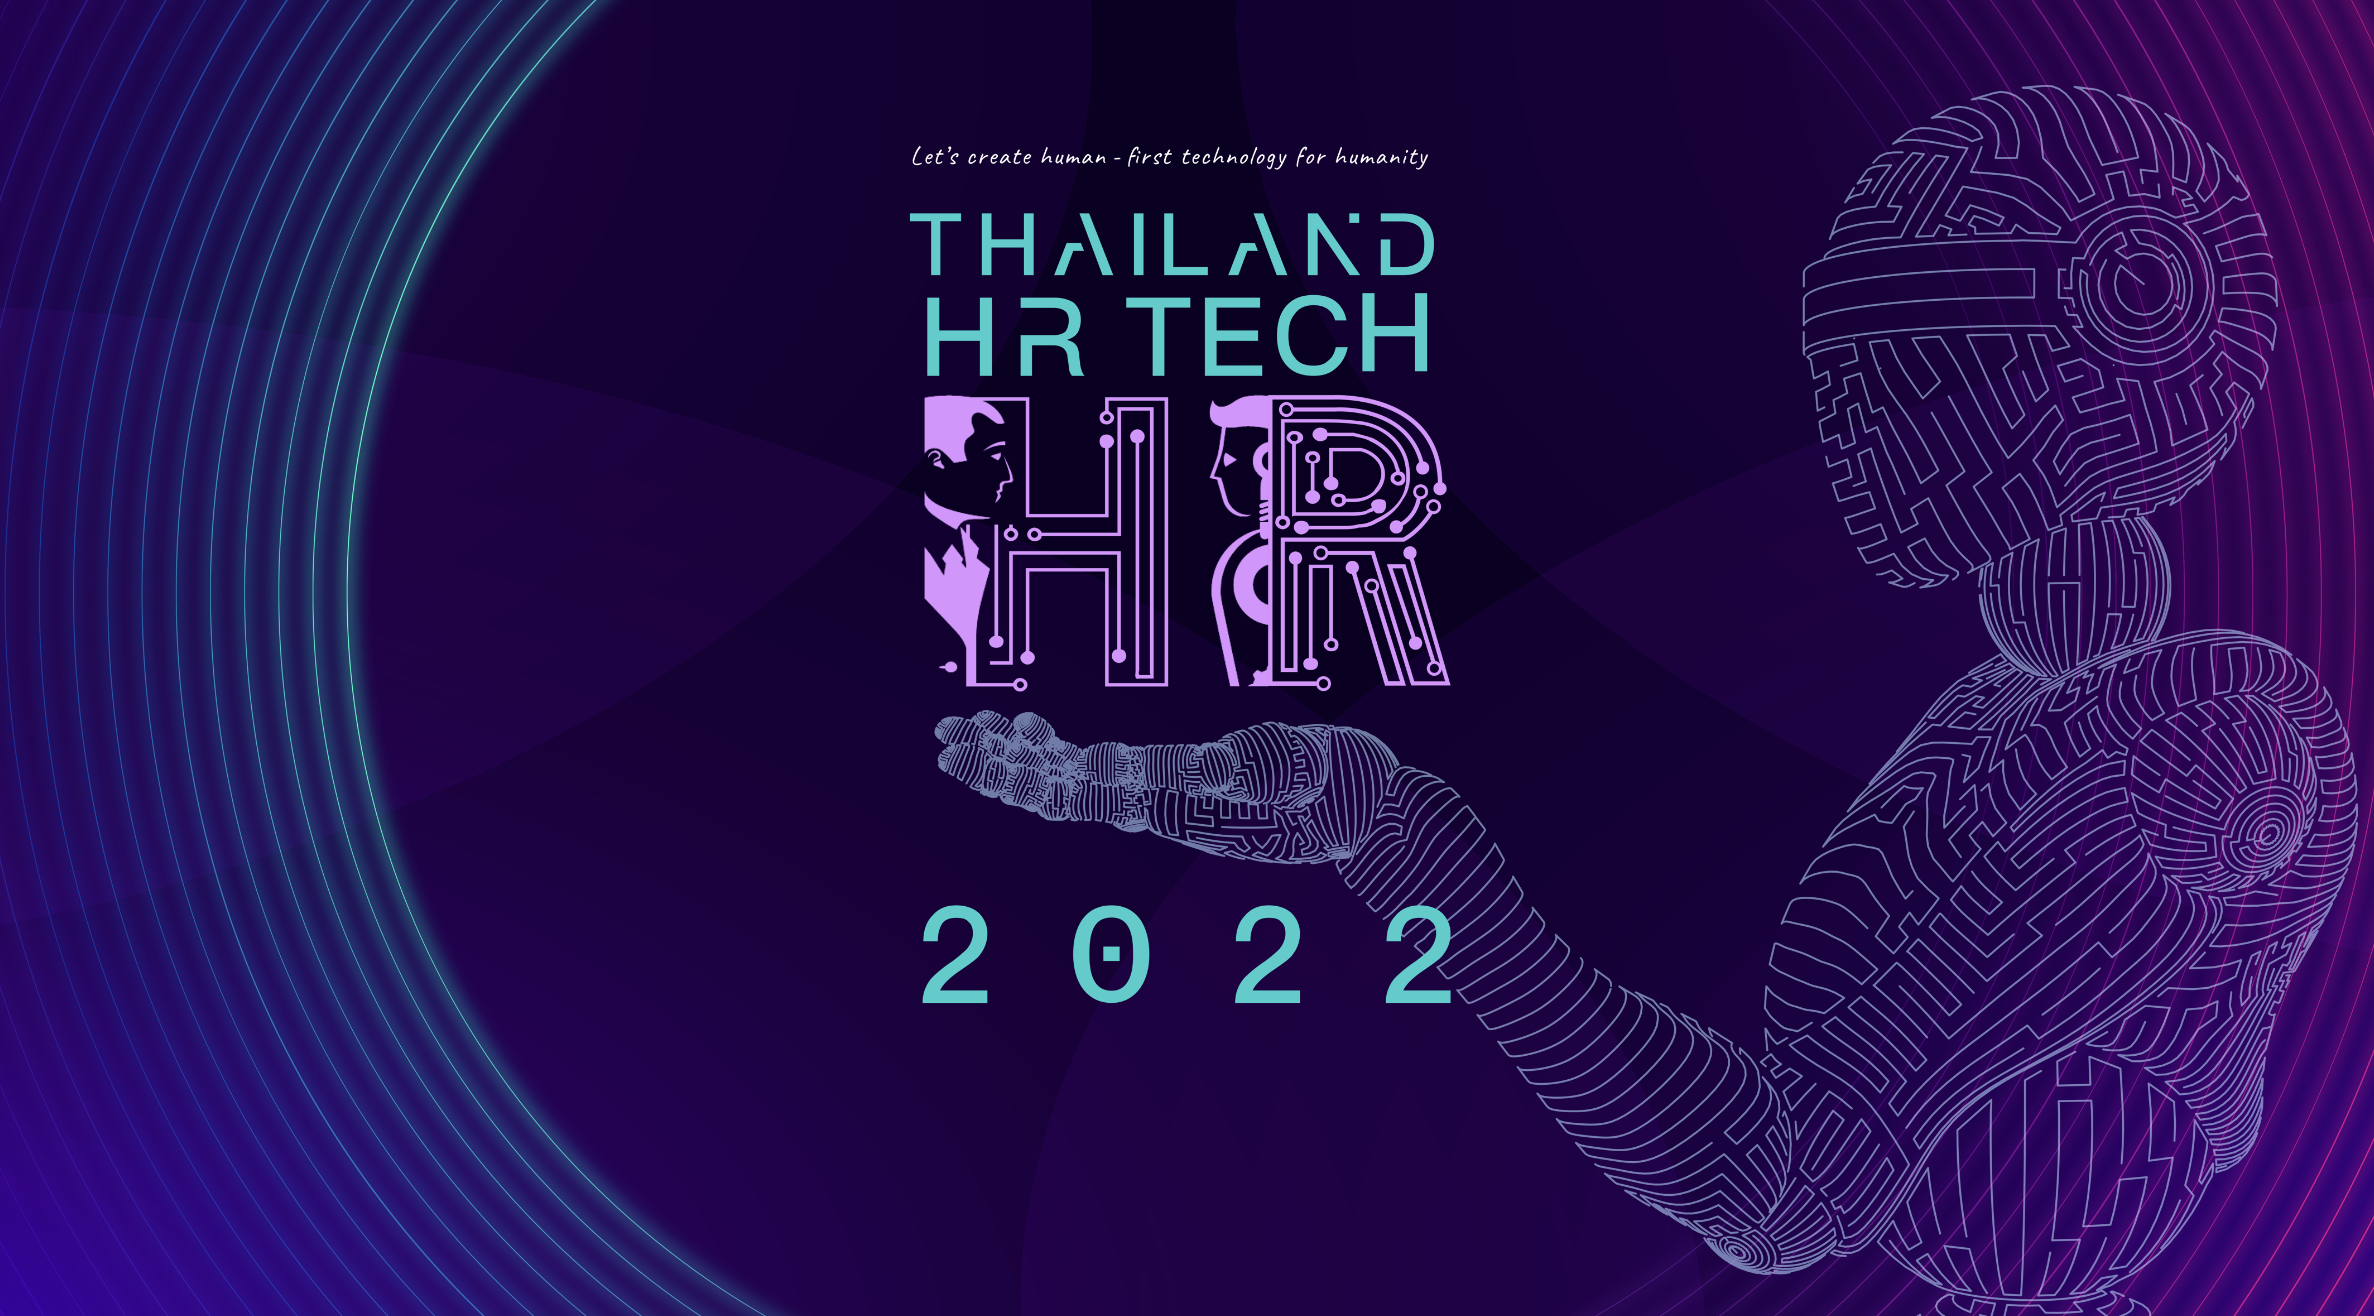 พบกับบูธ HR NOTE.asia ที่งาน Thailand HR Tech 2022 อีกขั้นของการพัฒนาคนด้วยเทคโนโลยี